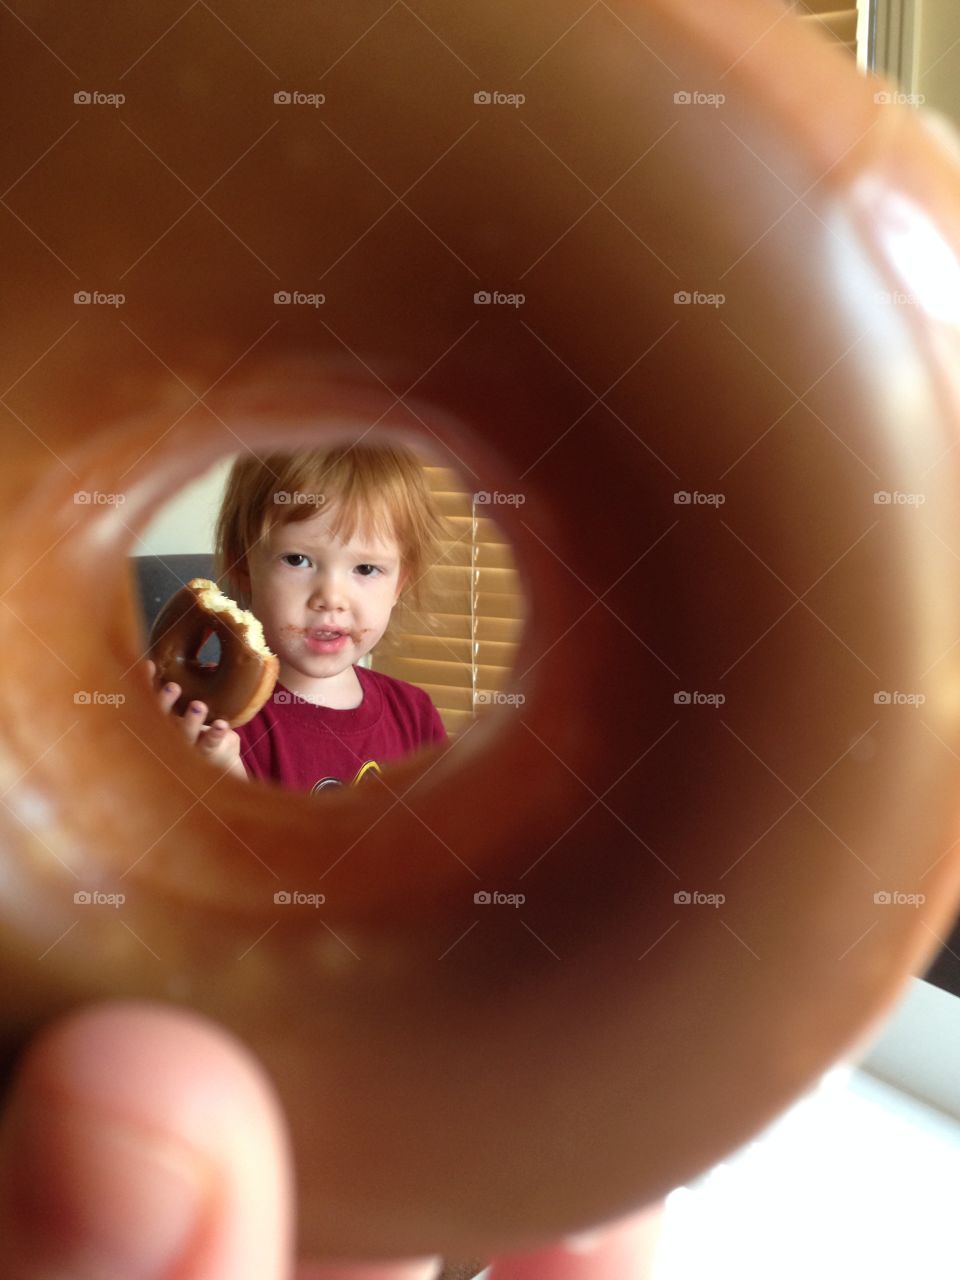 Donut vision . Yummy